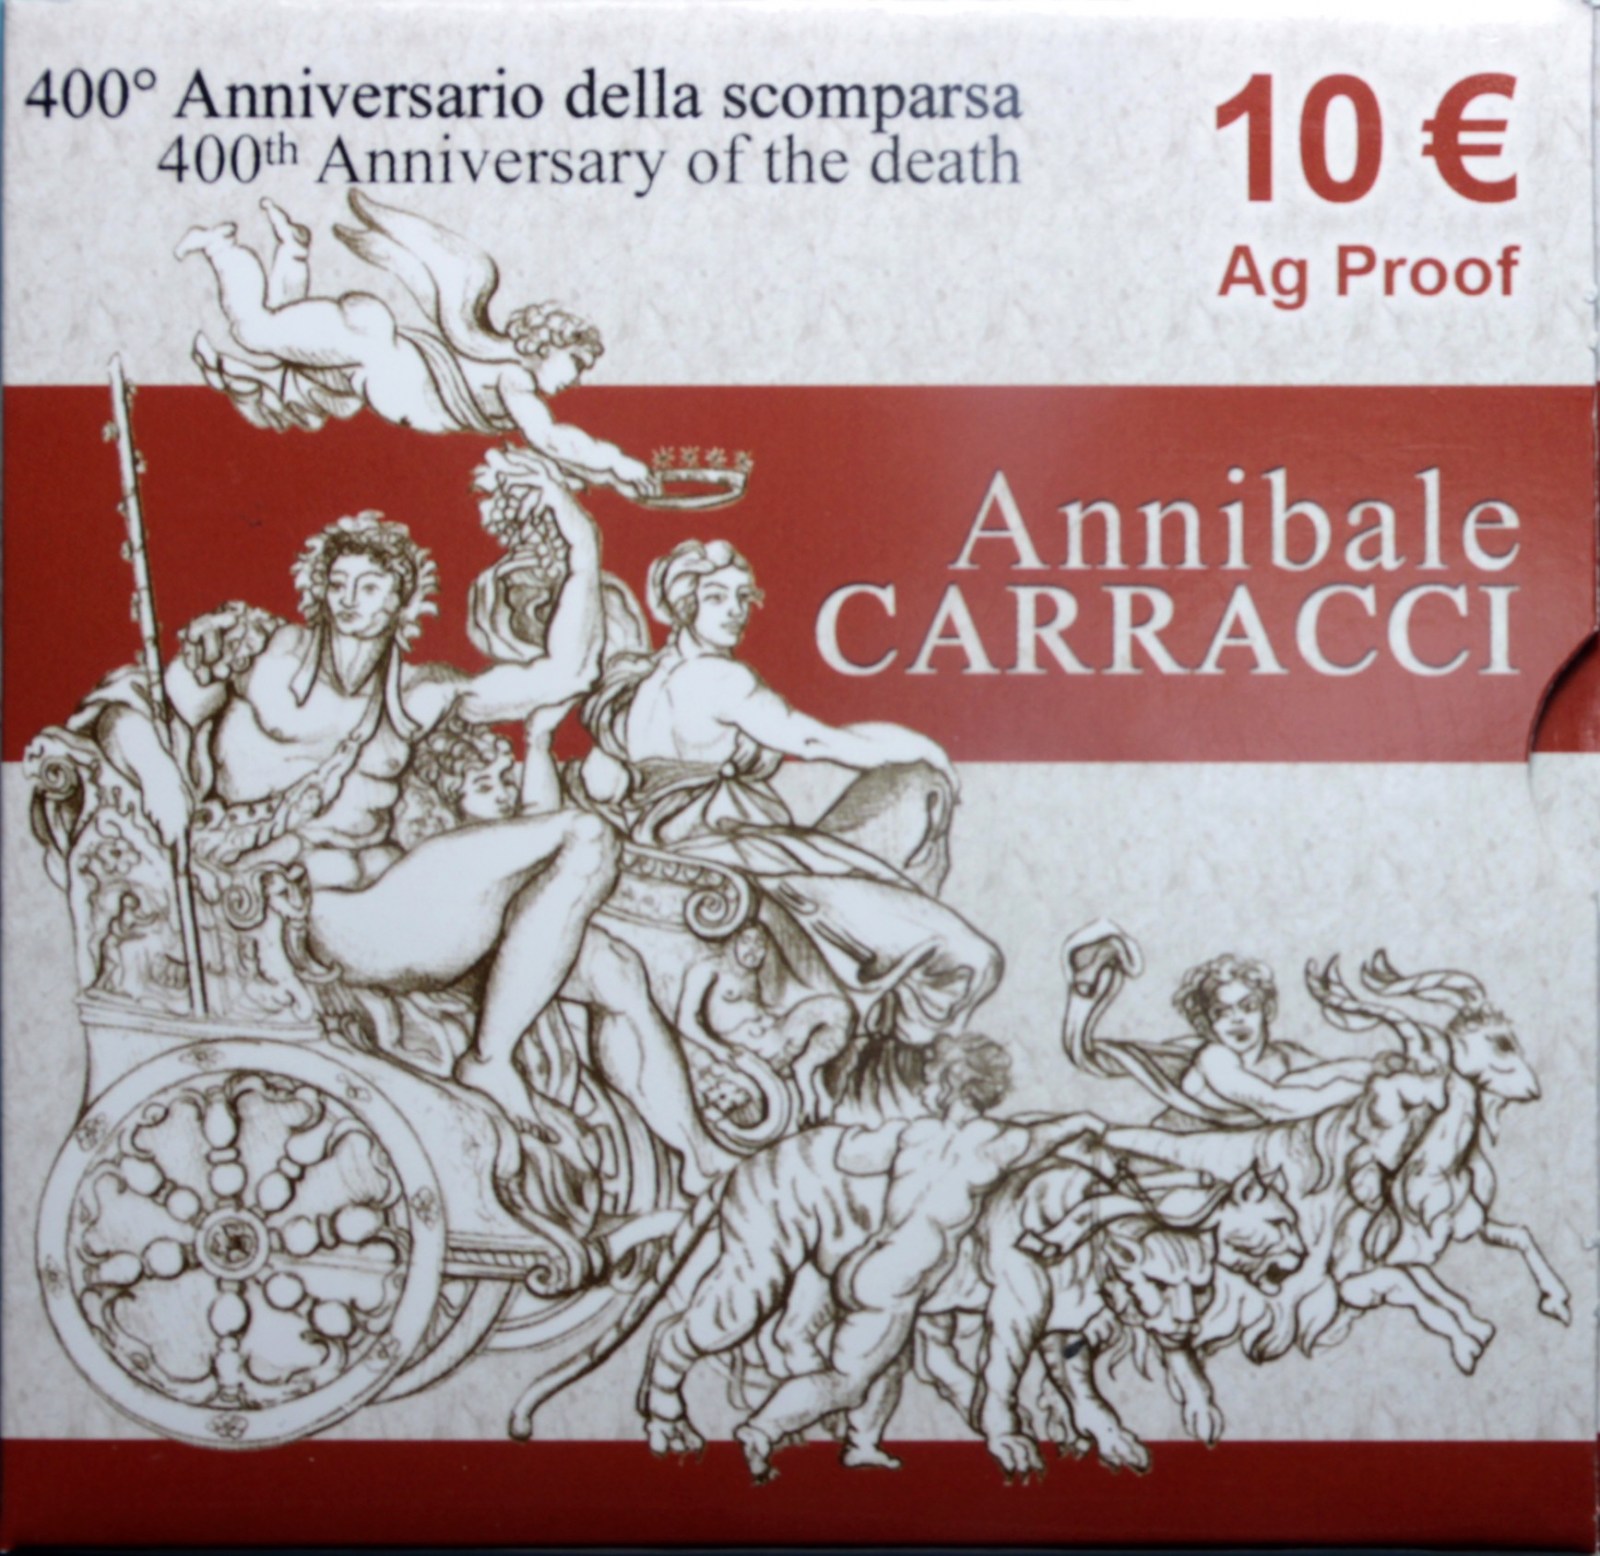 ITALIA 10 EURO COMMEMORATIVO 2009 ANNIBALE CARRACCI PROOF SCATOLA E GARANZIA